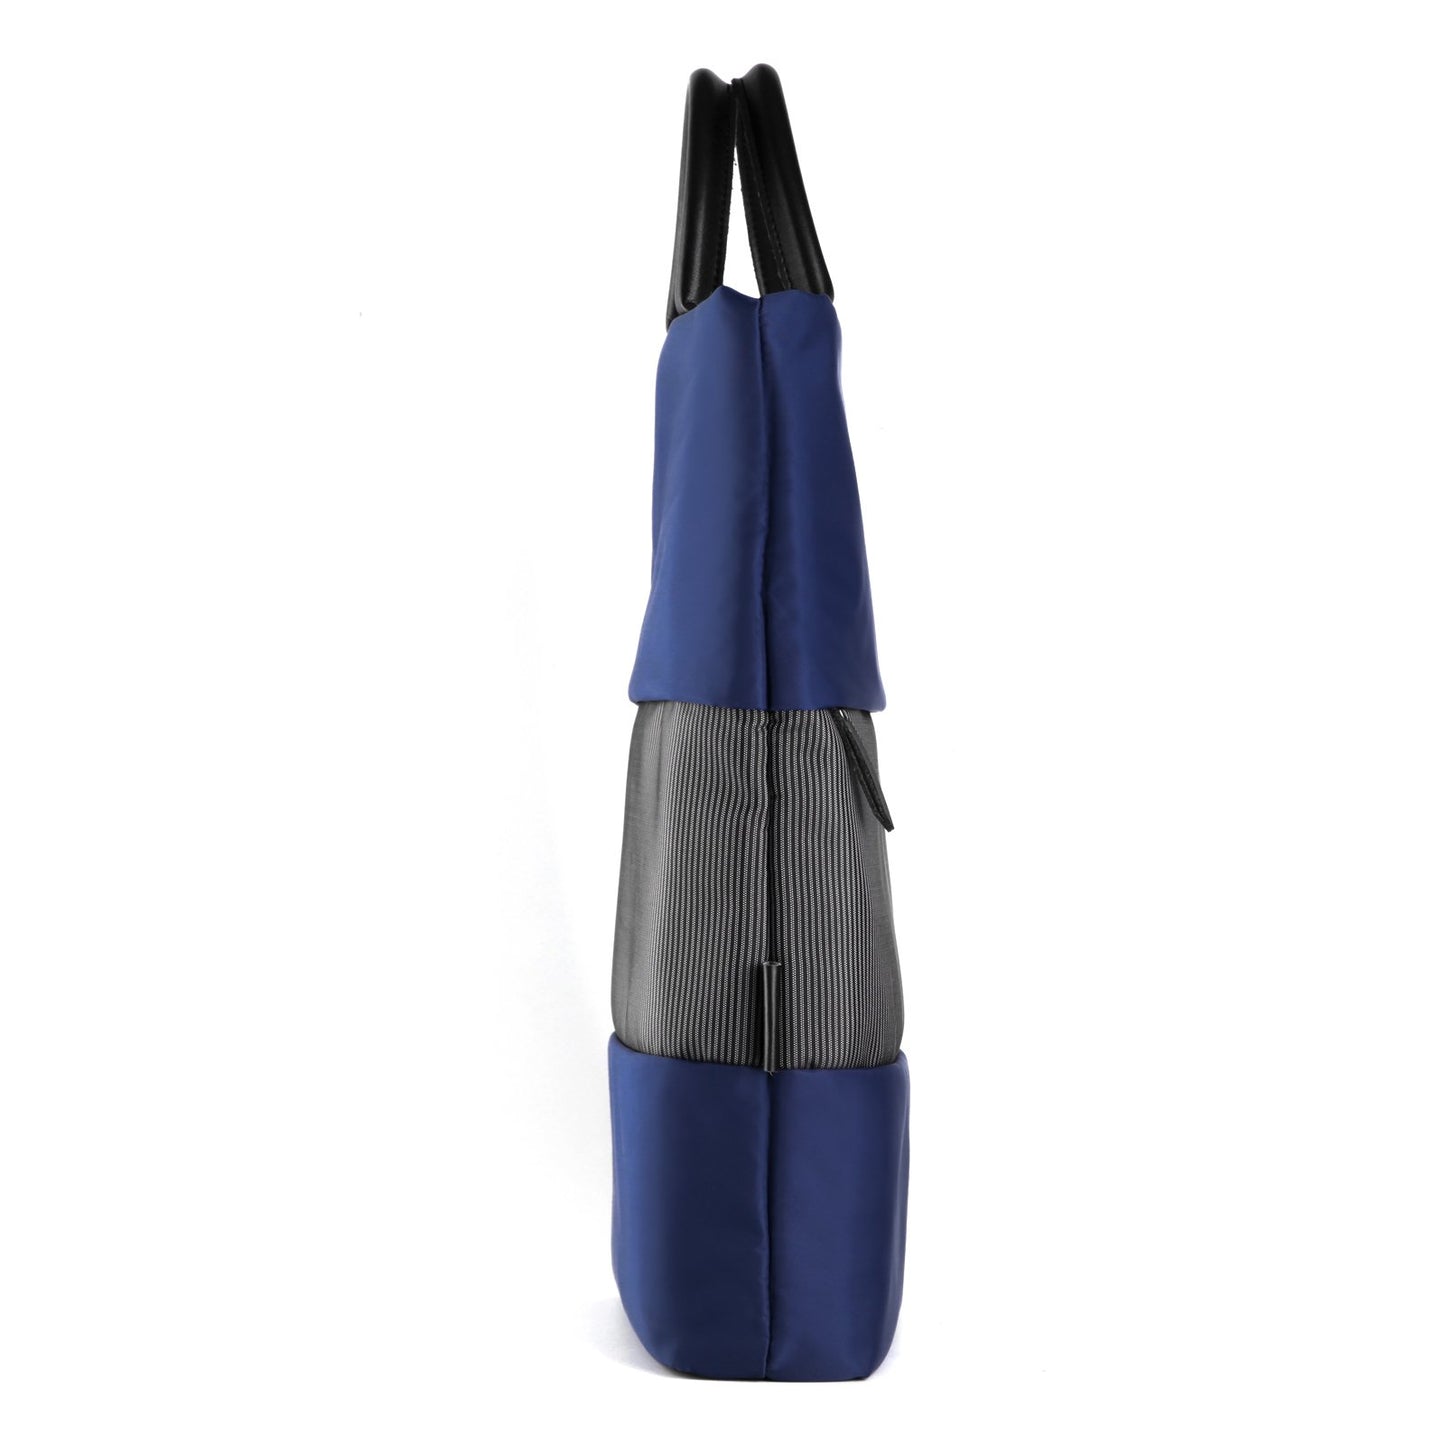 NIID TOTE - 15" Blue Handbag - NIID